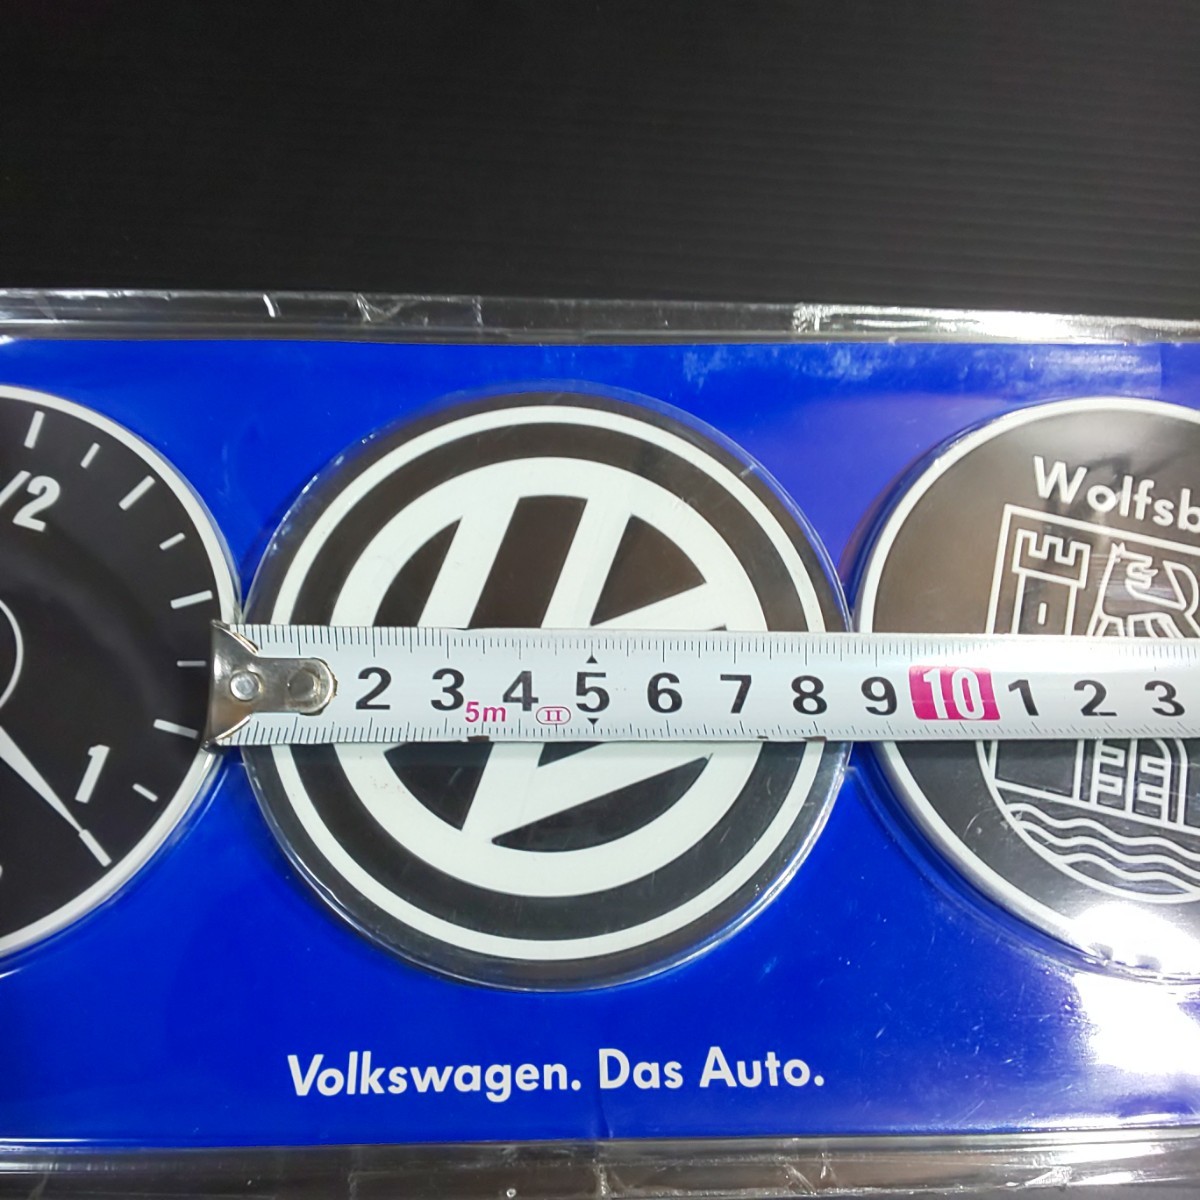 Volkswagen フォルクスワーゲン コースター 3枚セット - アクセサリー